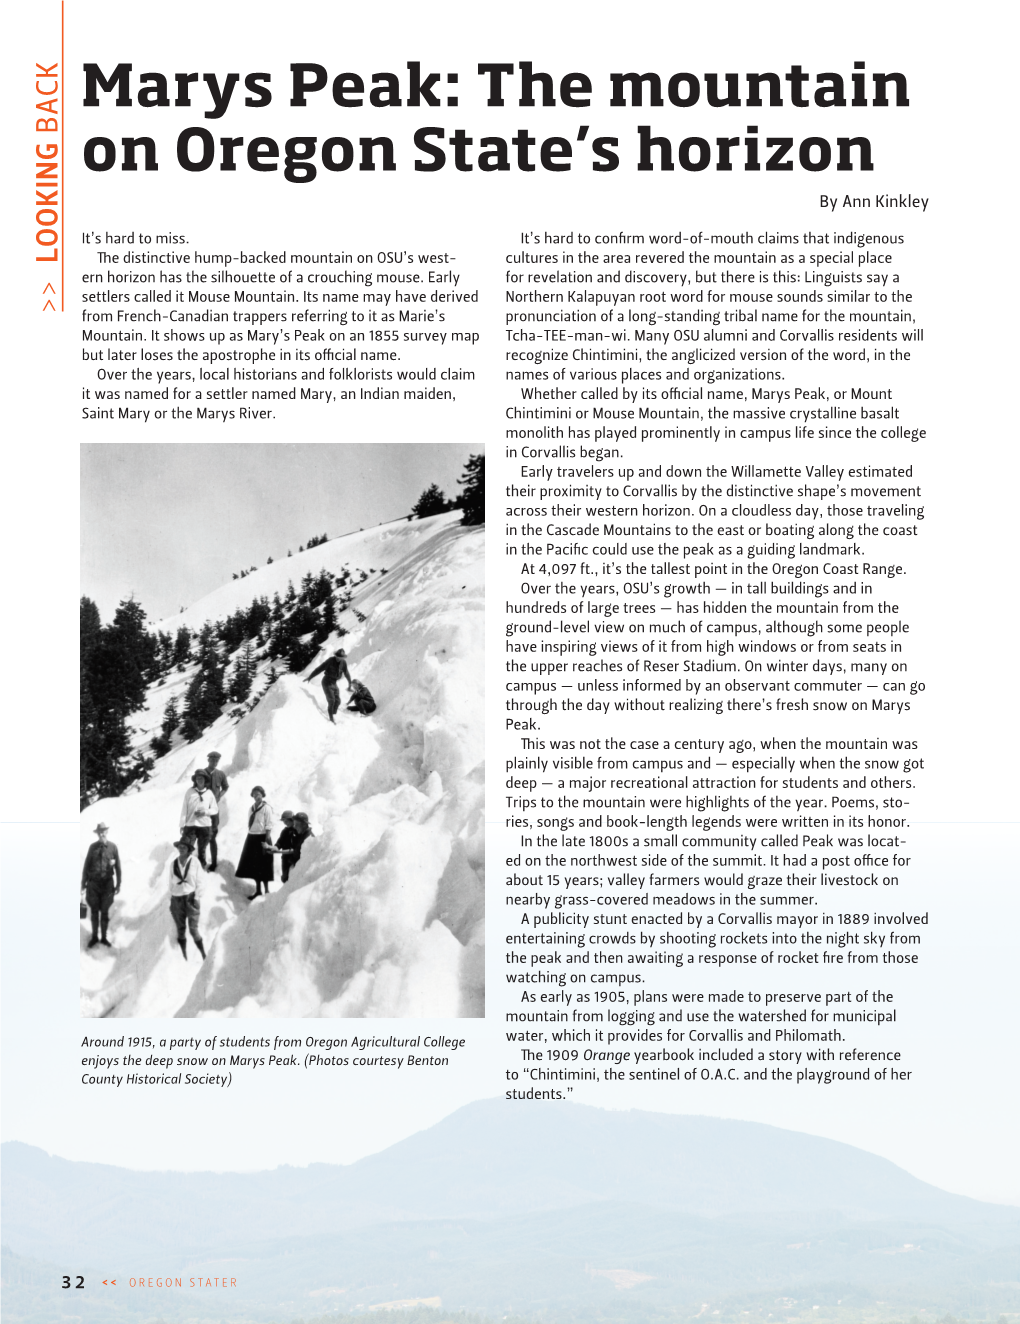 Marys Peak: the Mountain on Oregon State's Horizon